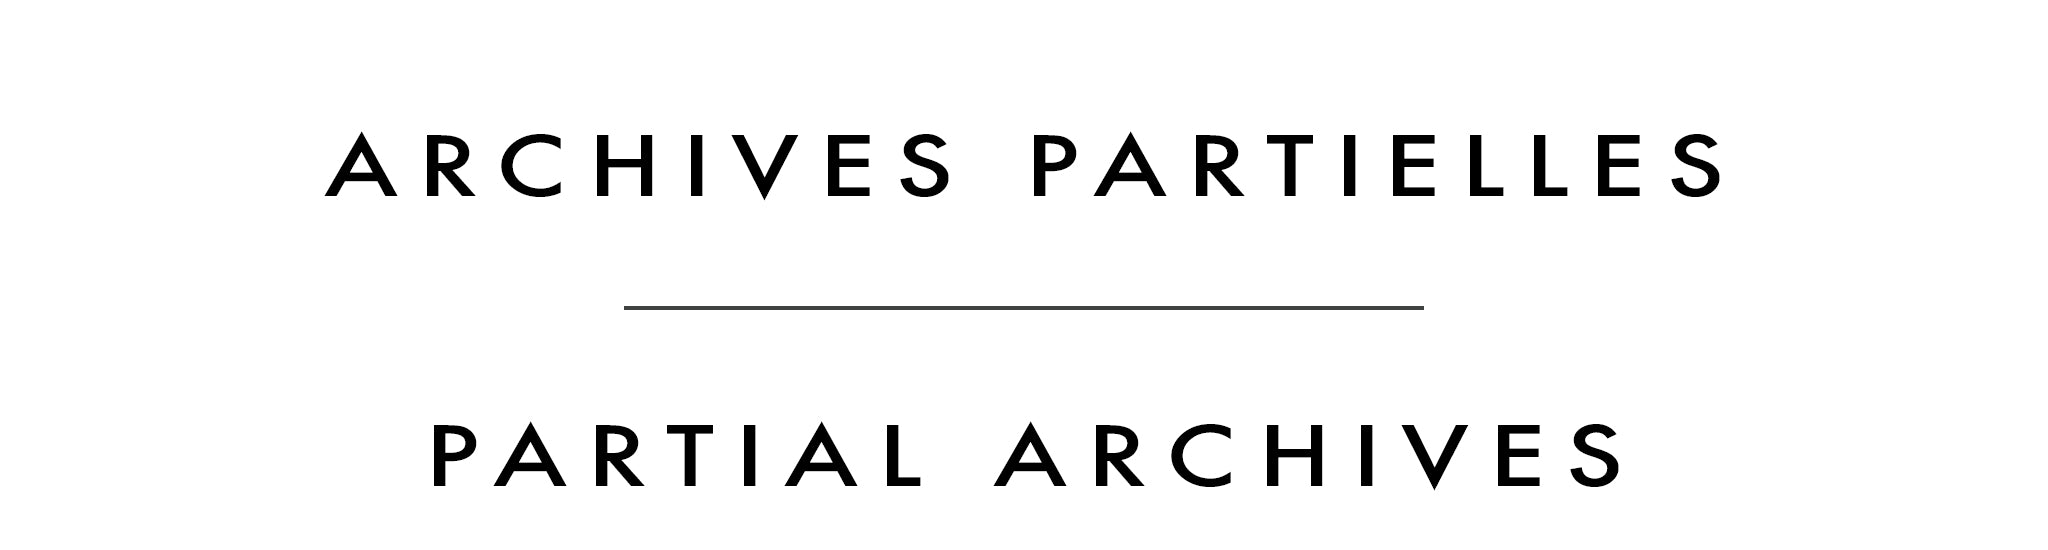 Archives partielles | Partial Archives | Cyril Cox